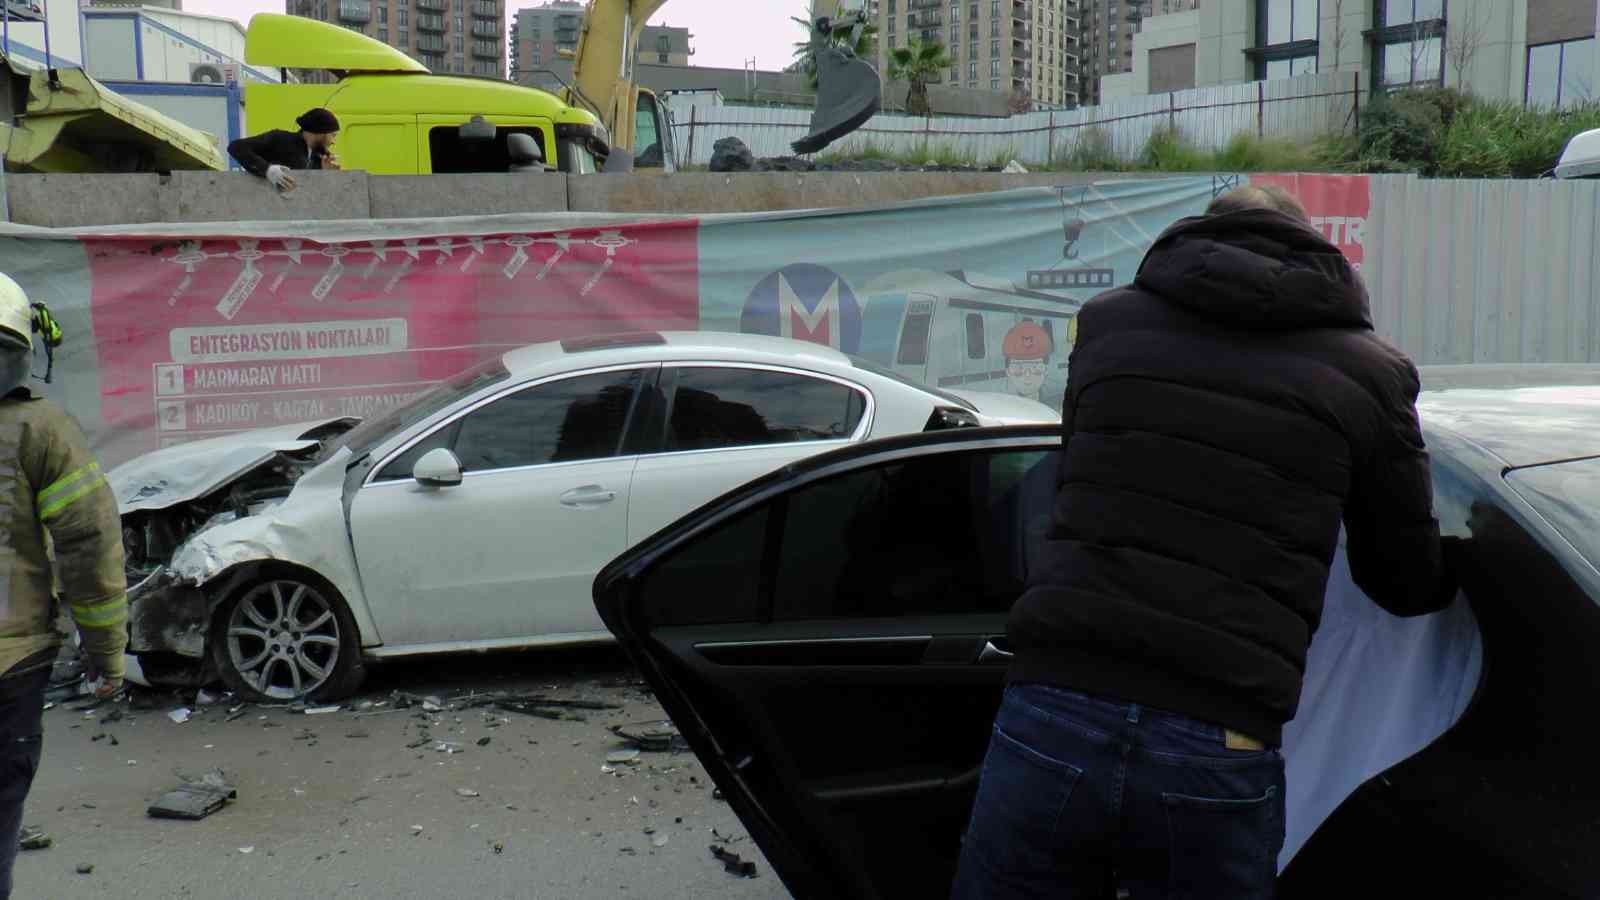 Ümraniye’de yol çalışması kazaya sebebiyet verdi, 4 kişi yaralandı #istanbul